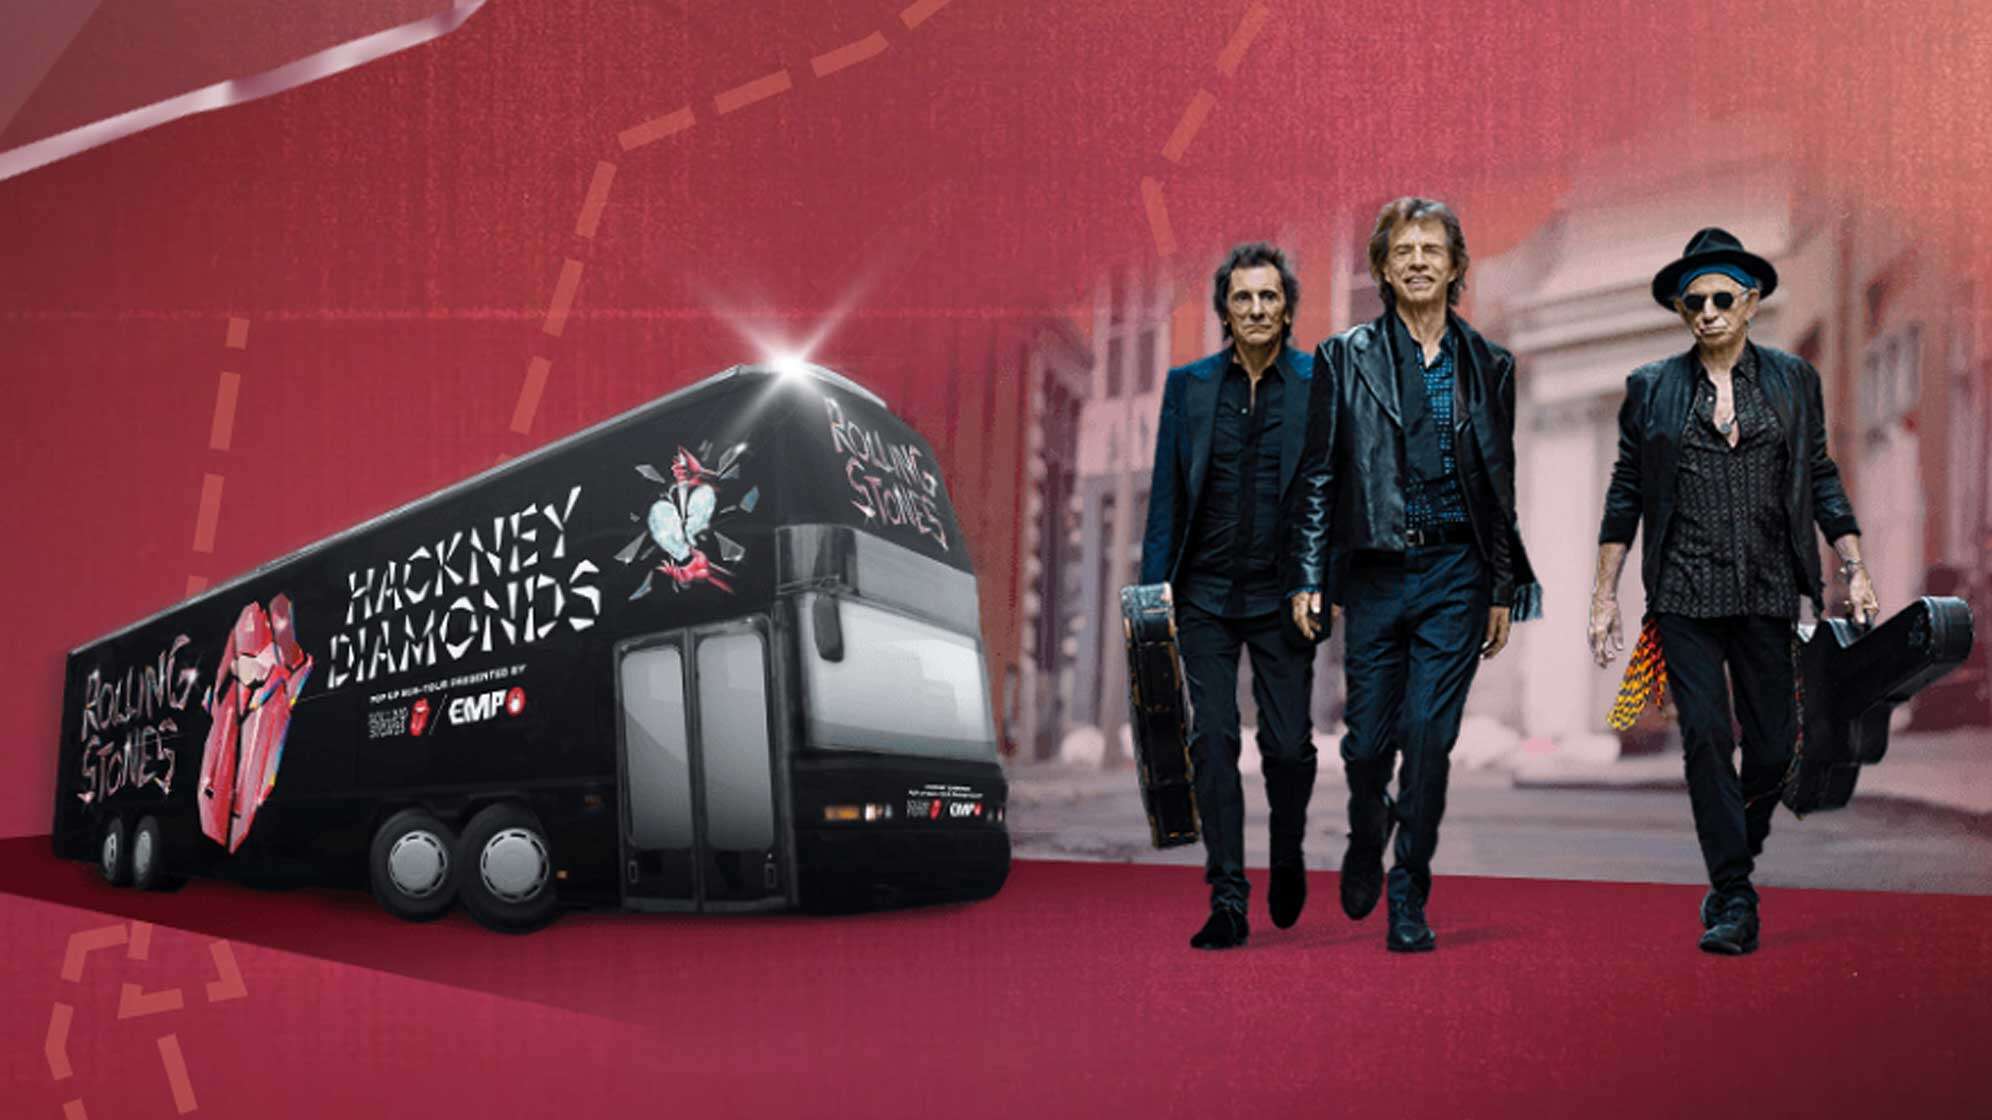 Bild der Rolling Stones und einem schwarzen Reisebus, auf dem steht "HACKNEY DIAMONDS" und das Logo der Band